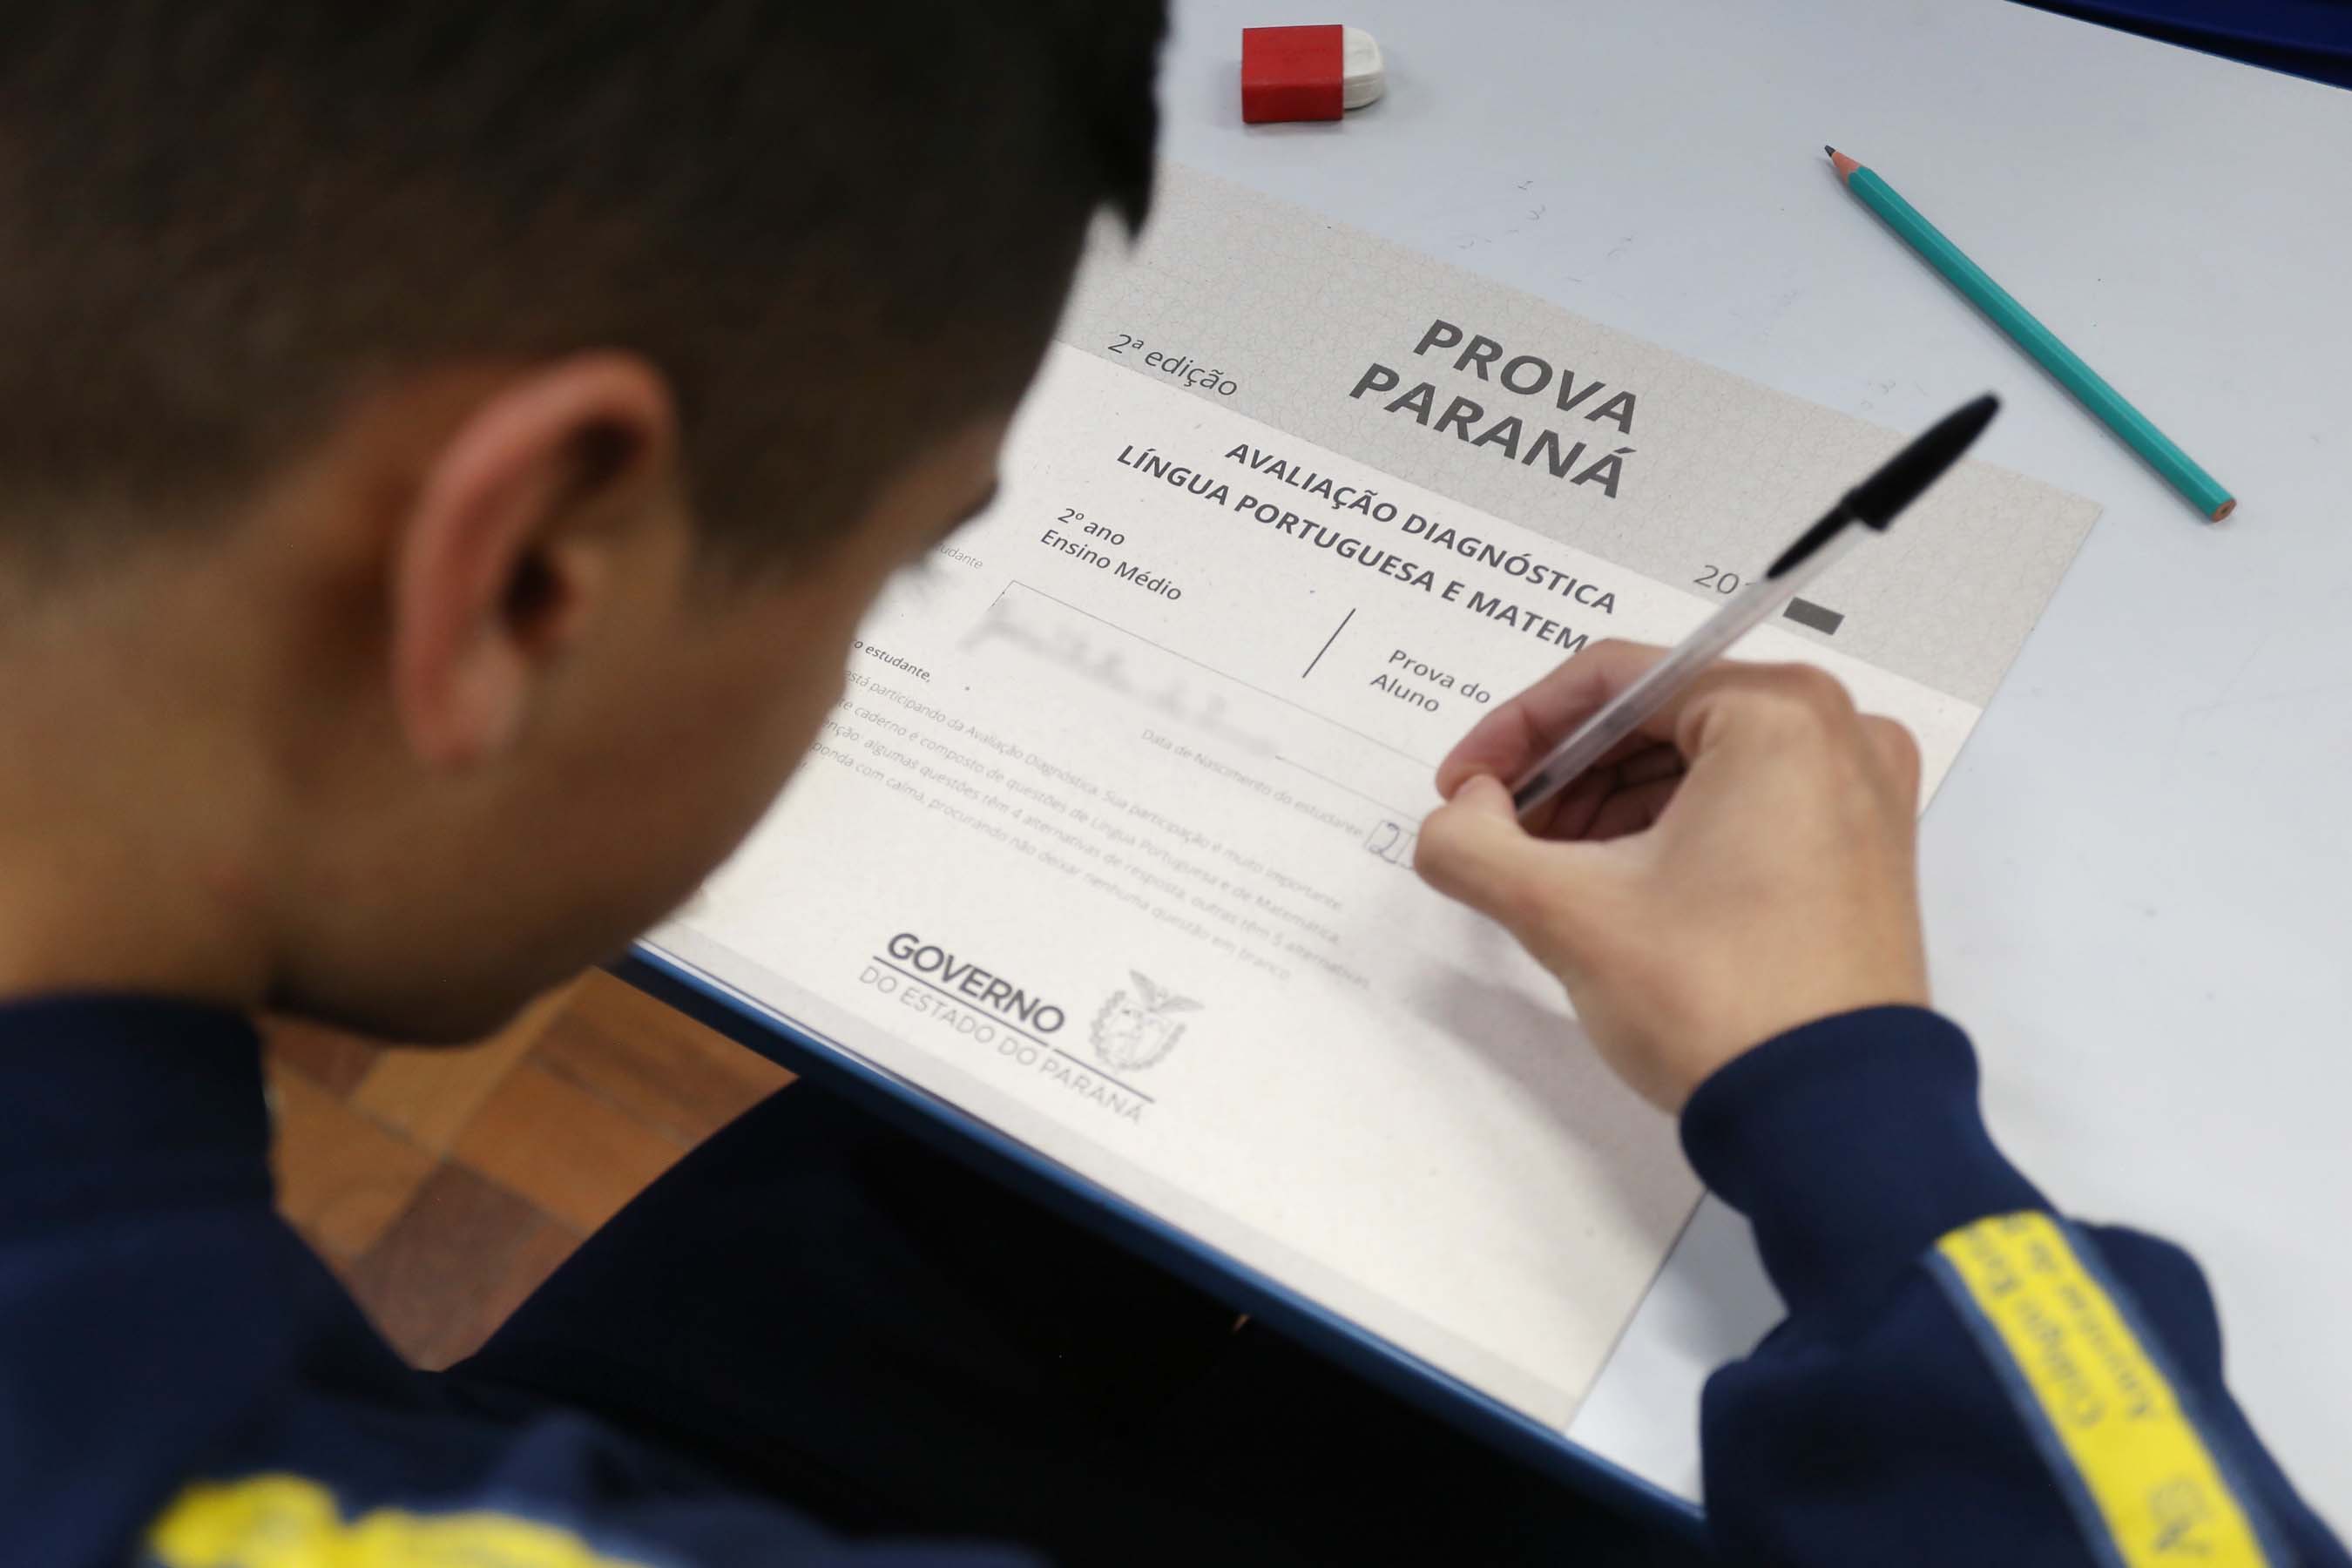 Cerca de 1 milhão de alunos farão a Prova Paraná